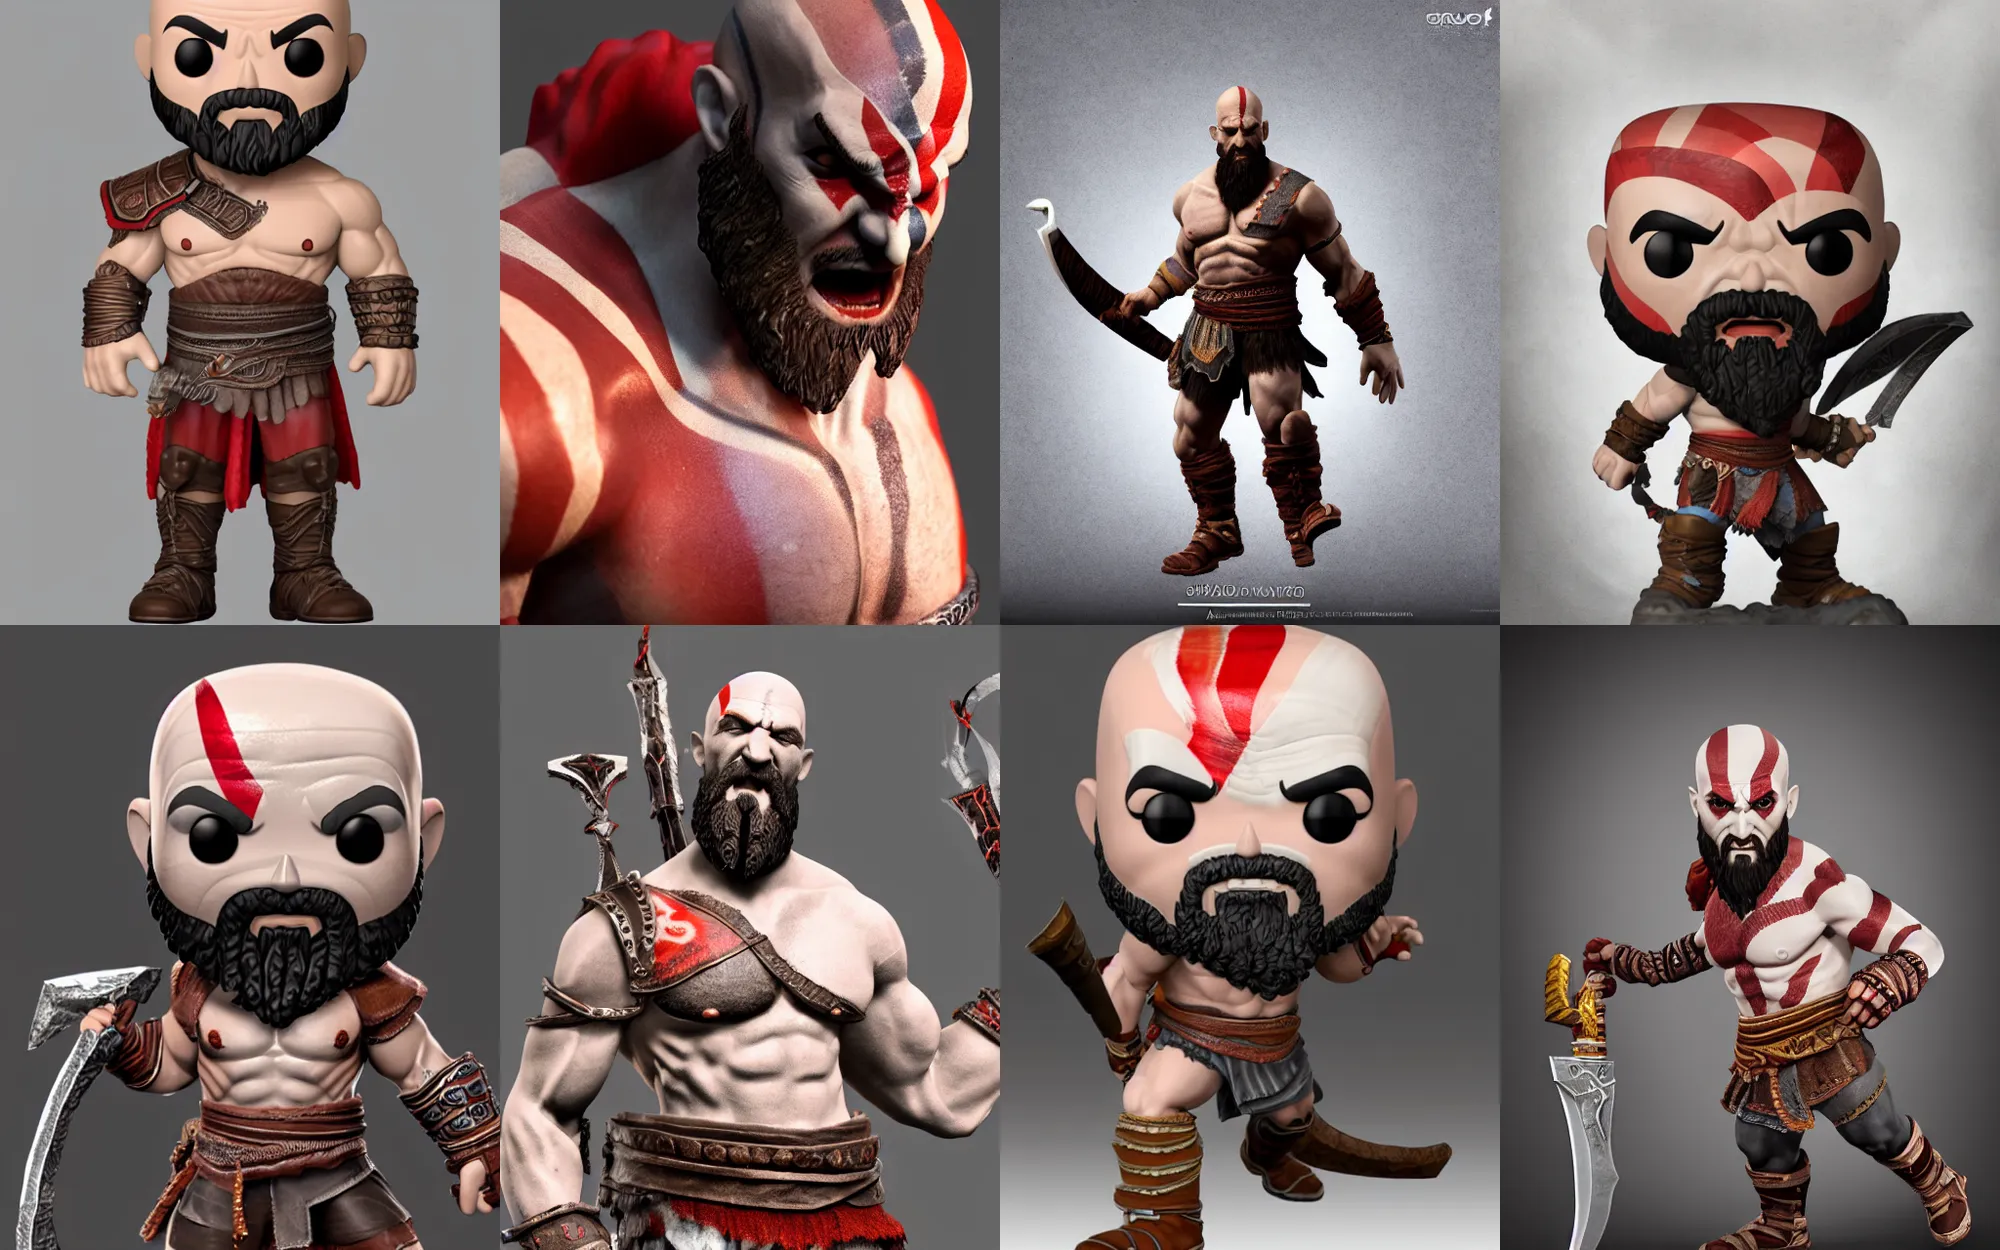 Prompt: full body 3d render of Kratos from god of war as a funko pop, studio lighting, white background, blender, trending on artstation, 8k, highly detailed